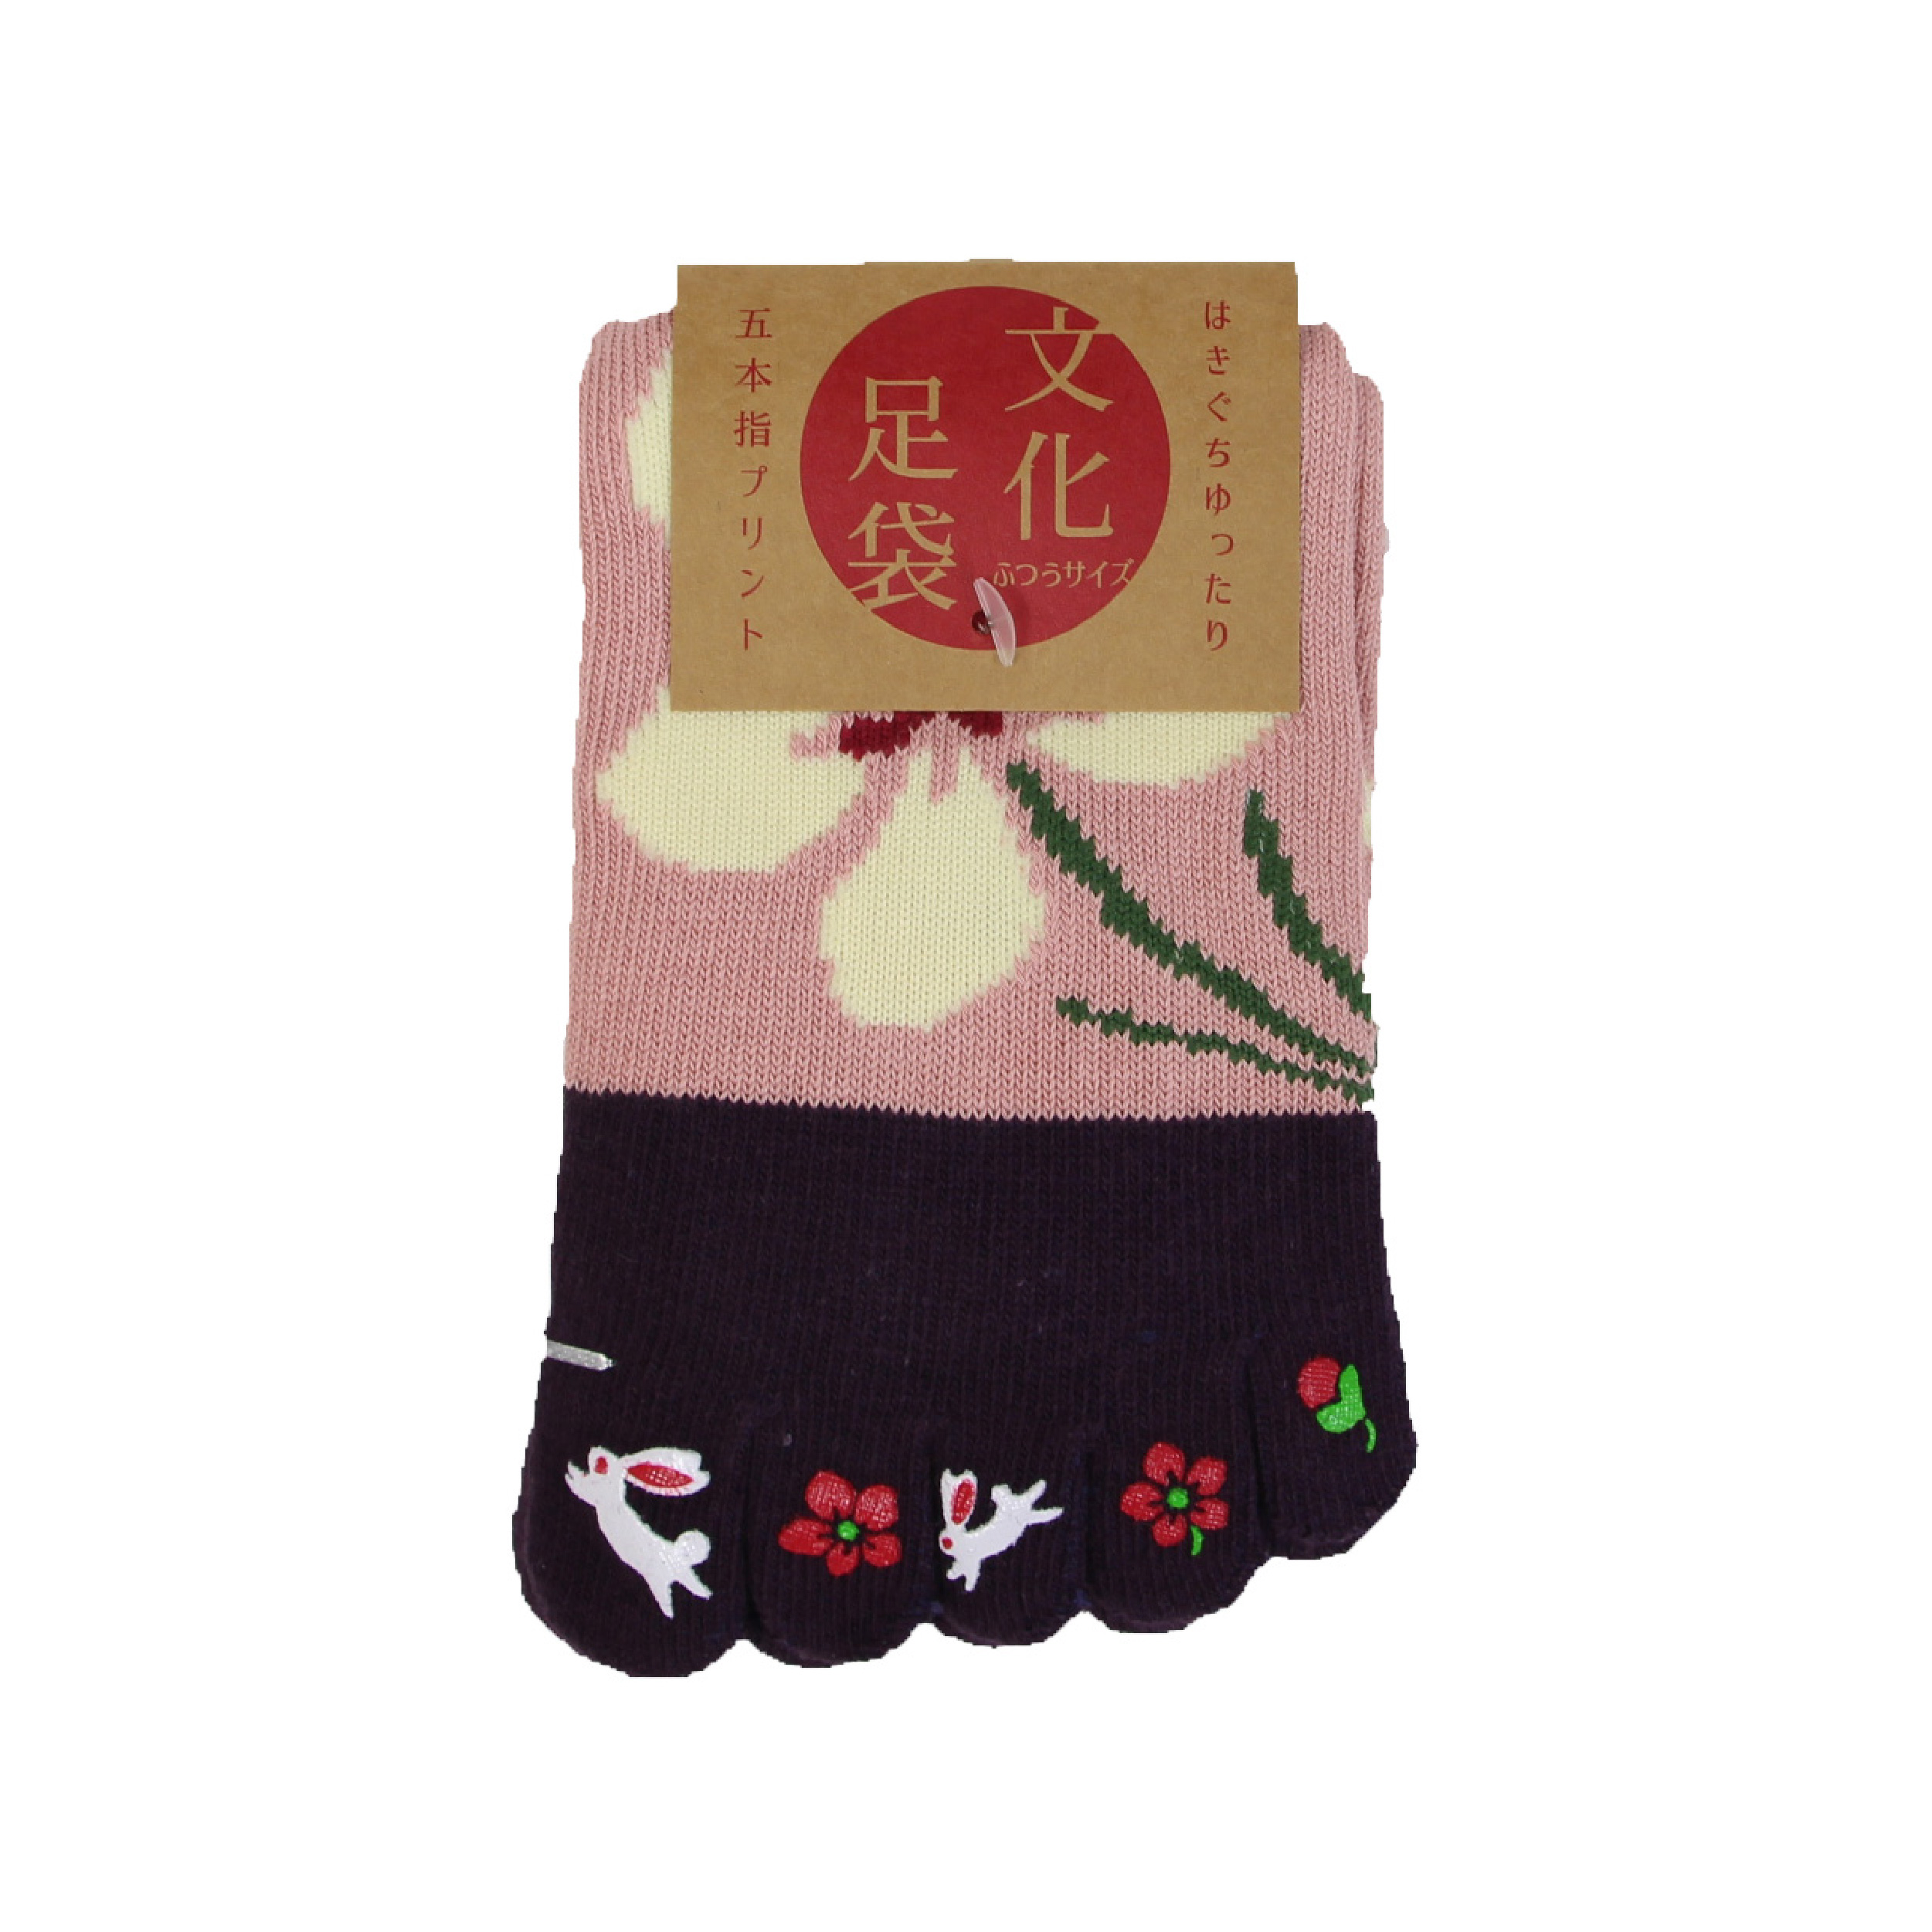 靴下 レディース 女性用 全10種 ソックス 5本指 和柄 蒸れない 京都和雑貨 おしゃれ かわいい